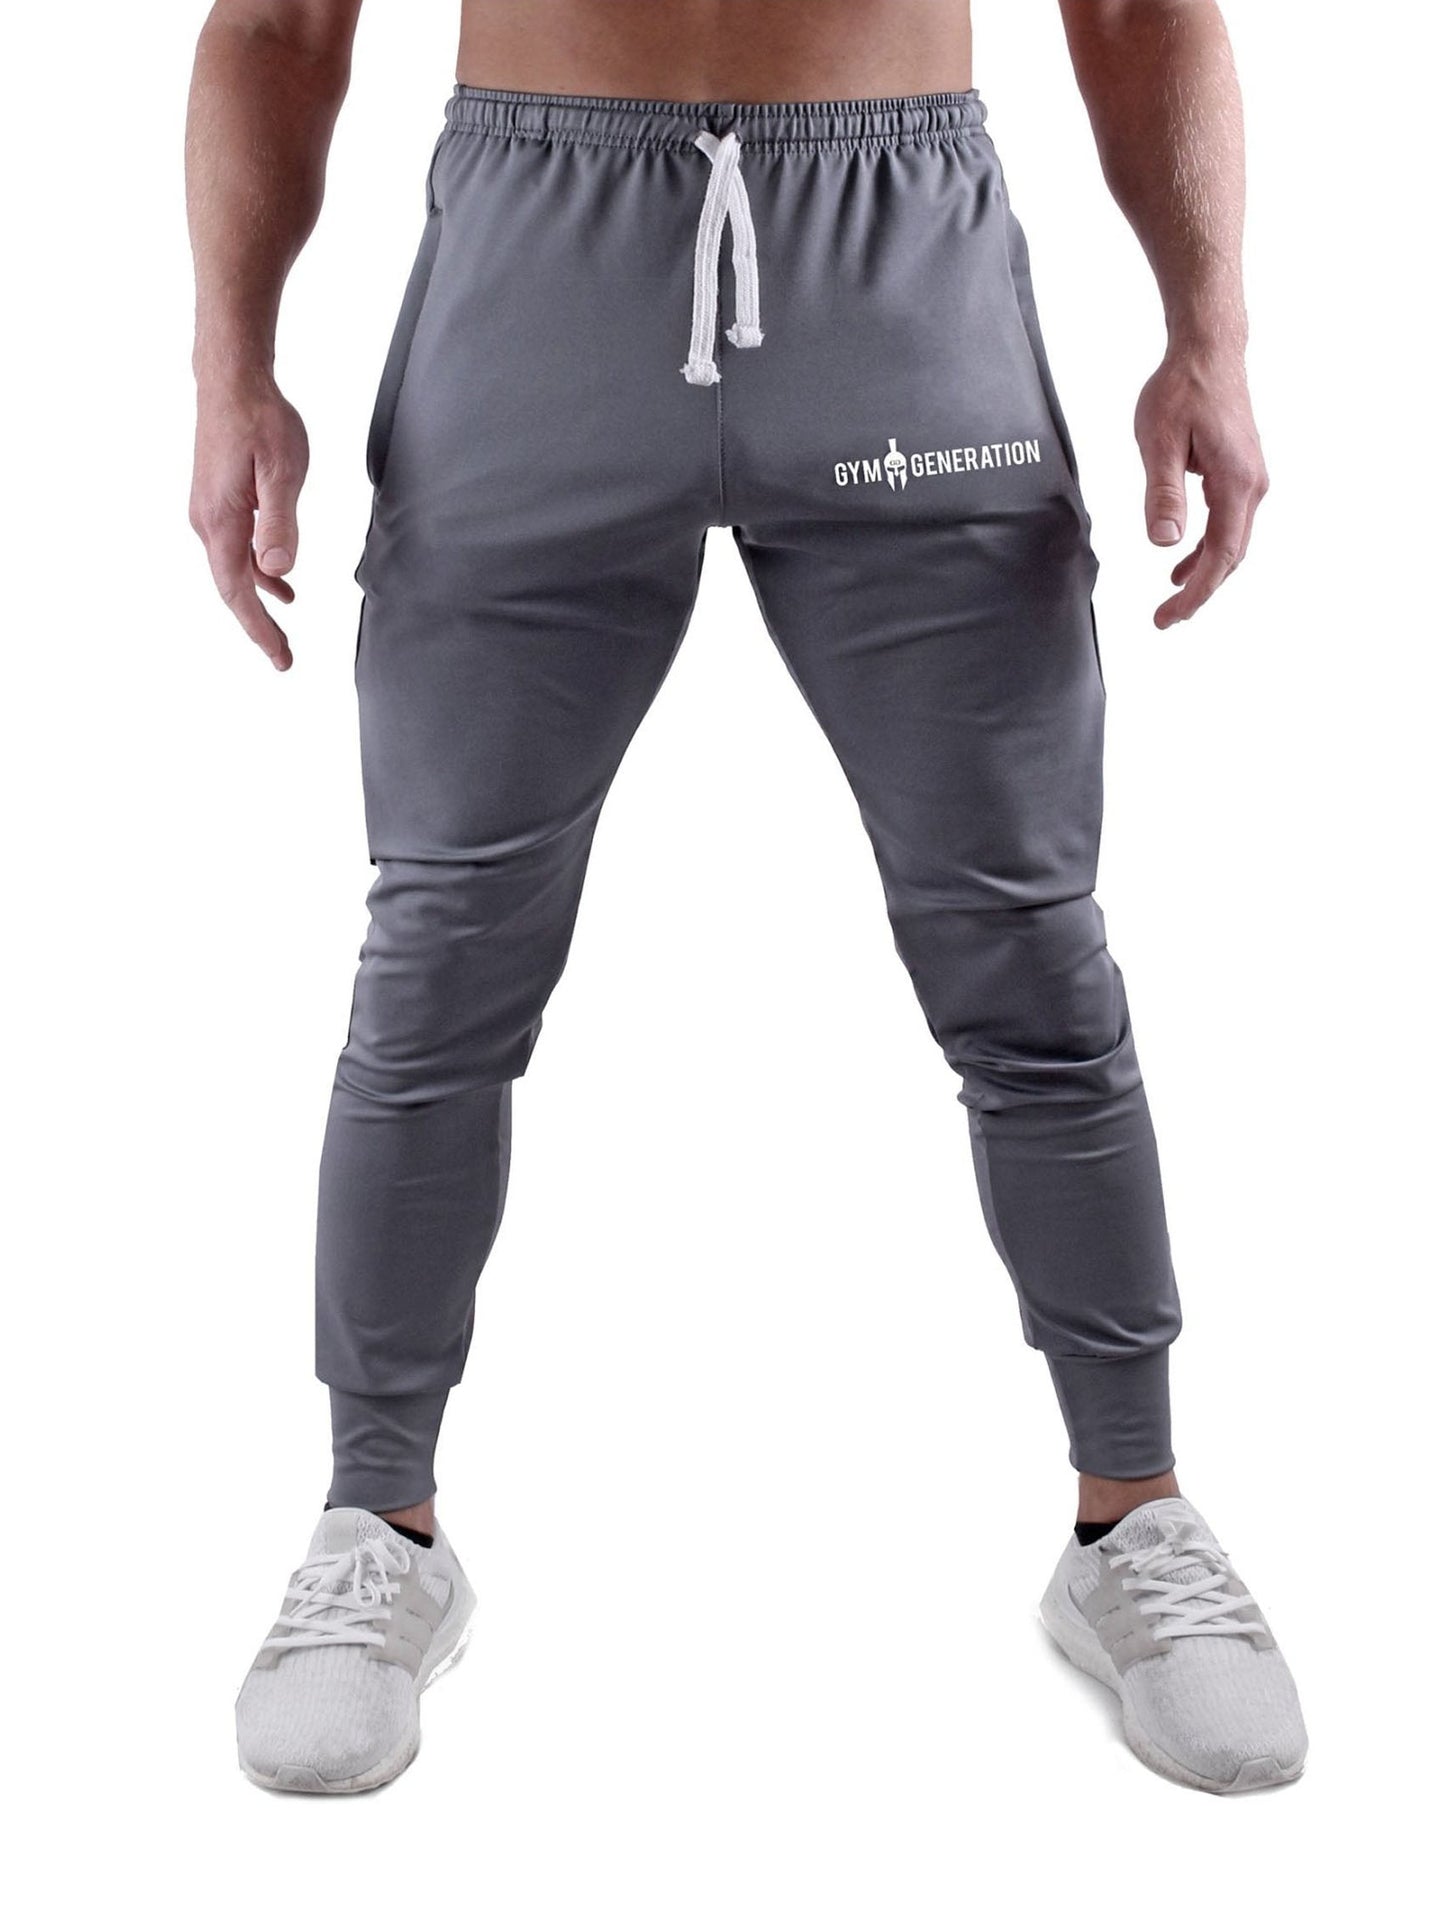 Gym Generation Trainer Pants in stilvollem Grau, getragen von sportlichen Männern mit Sneakers.